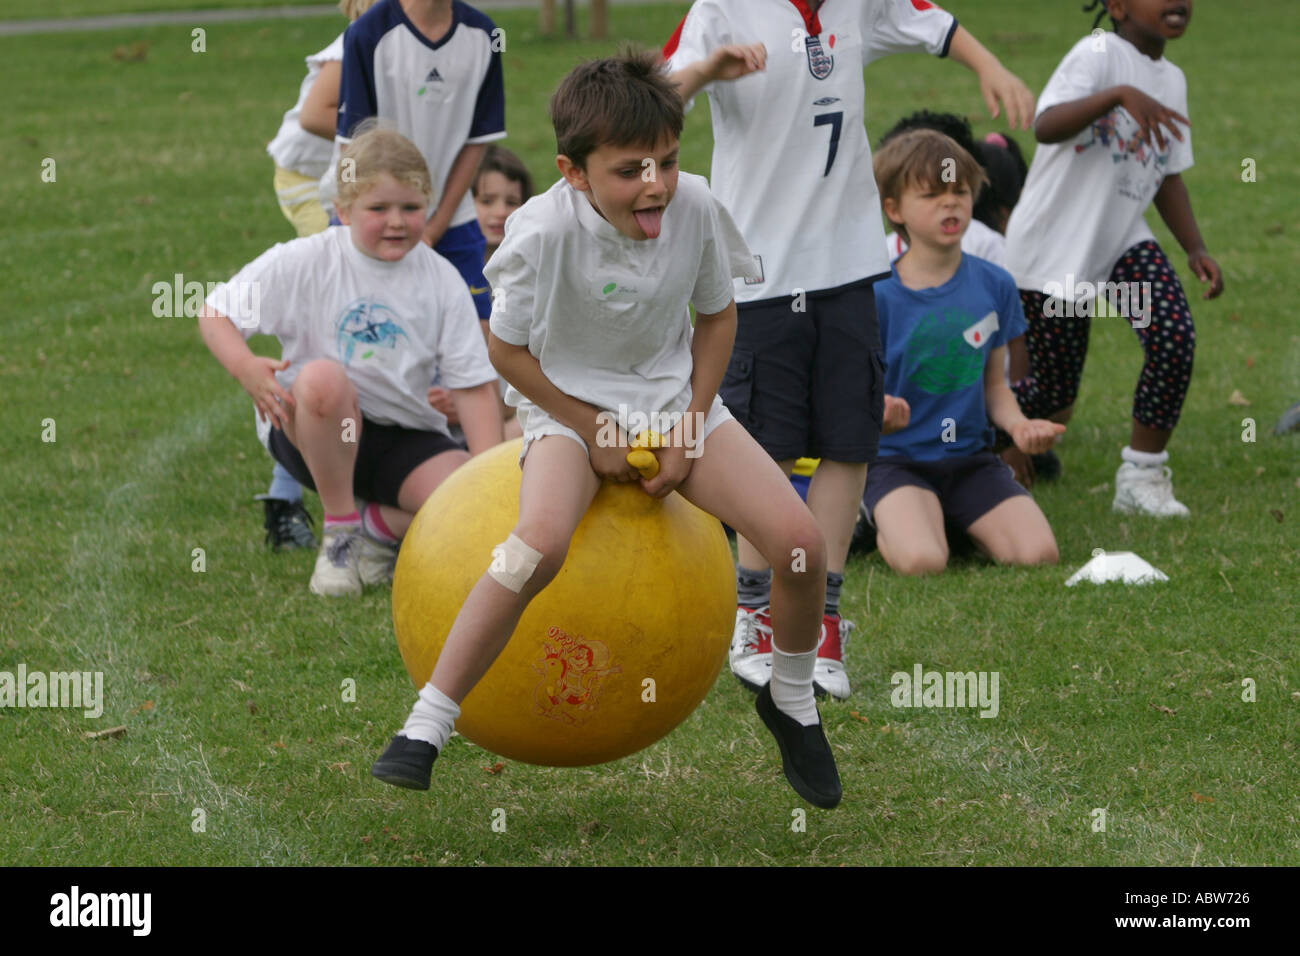 Eine Grundschule junge springt auf einen springenden Ball während einer Schulsporttag Clissold Park, London, UK. Stockfoto